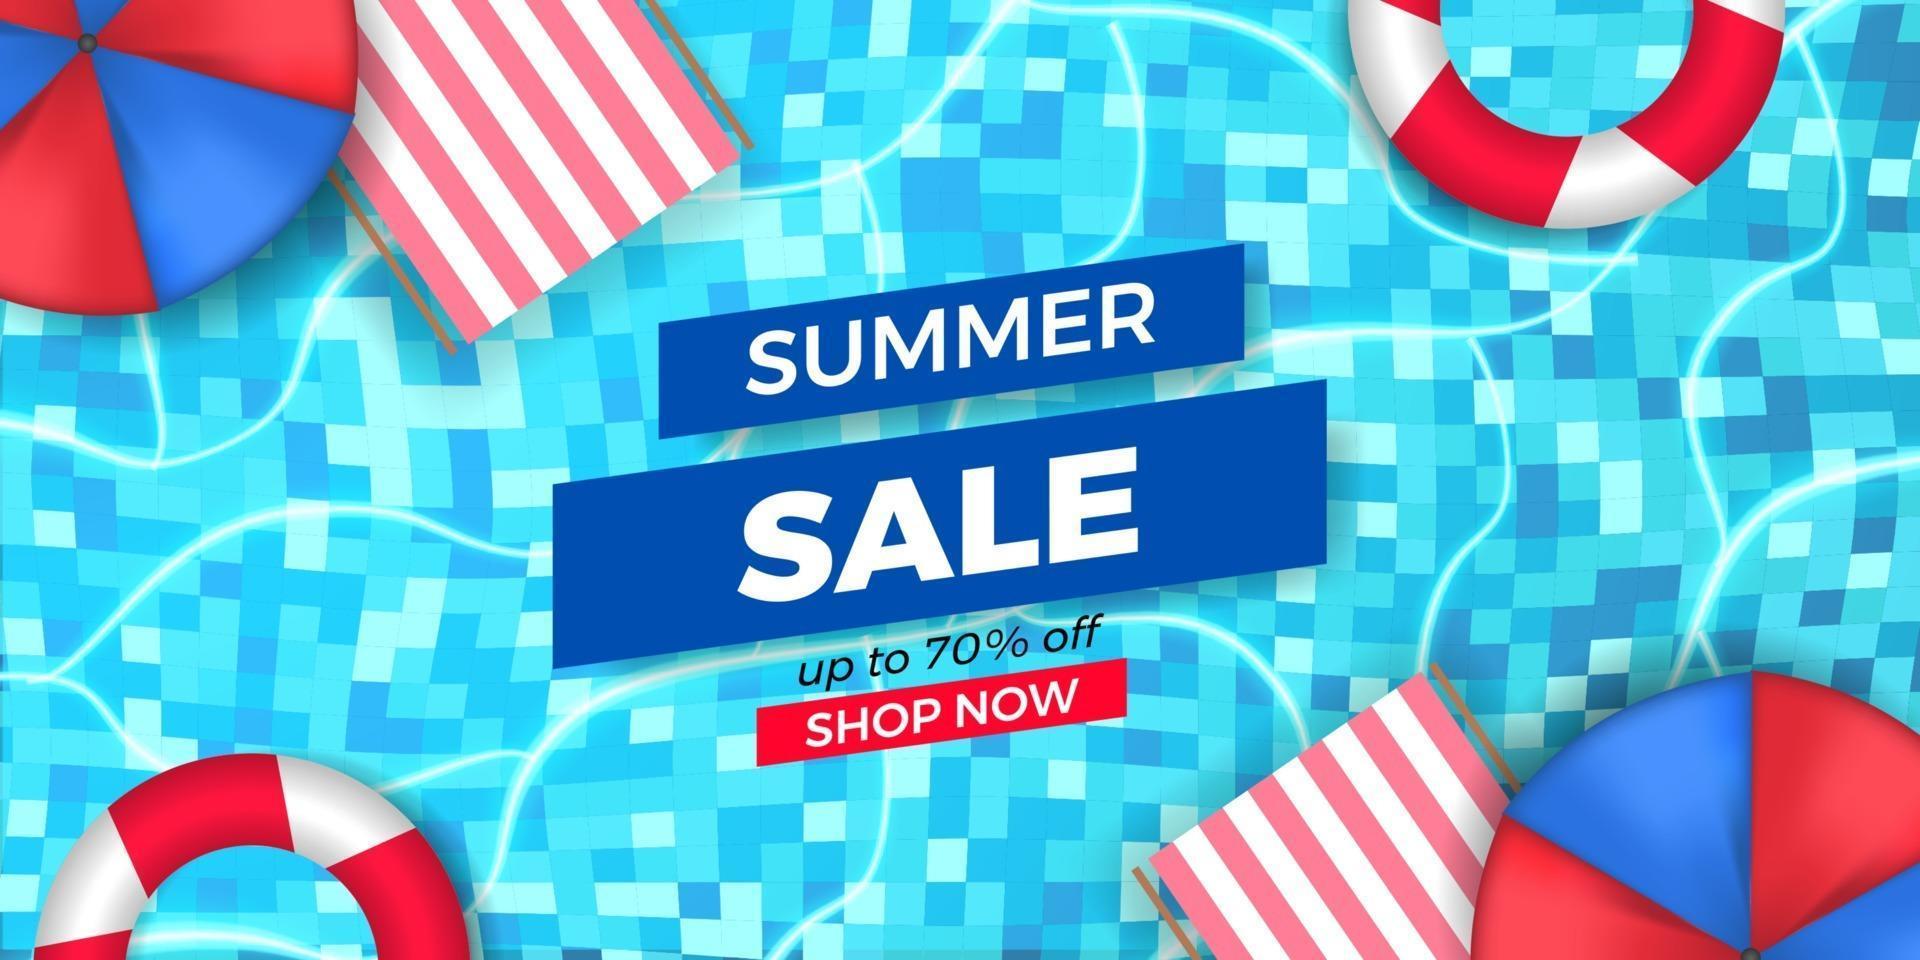 Sommerverkaufsangebot-Banner-Werbung mit Pool-Draufsicht vektor